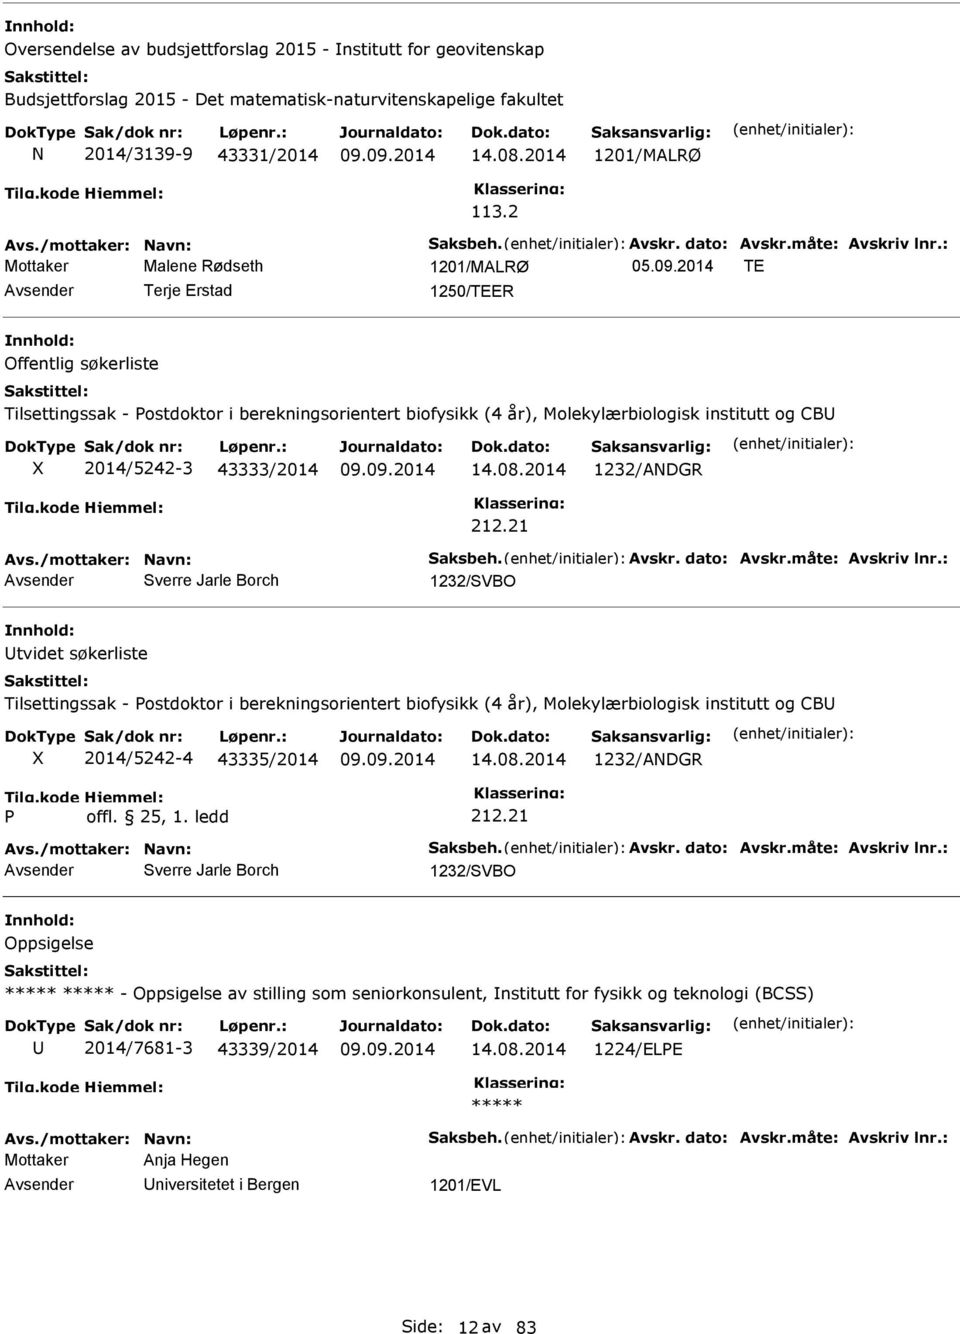 2014 TE Terje Erstad 1250/TEER Offentlig søkerliste Tilsettingssak - ostdoktor i berekningsorientert biofysikk (4 år), Molekylærbiologisk institutt og CB 2014/5242-3 43333/2014 14.08.